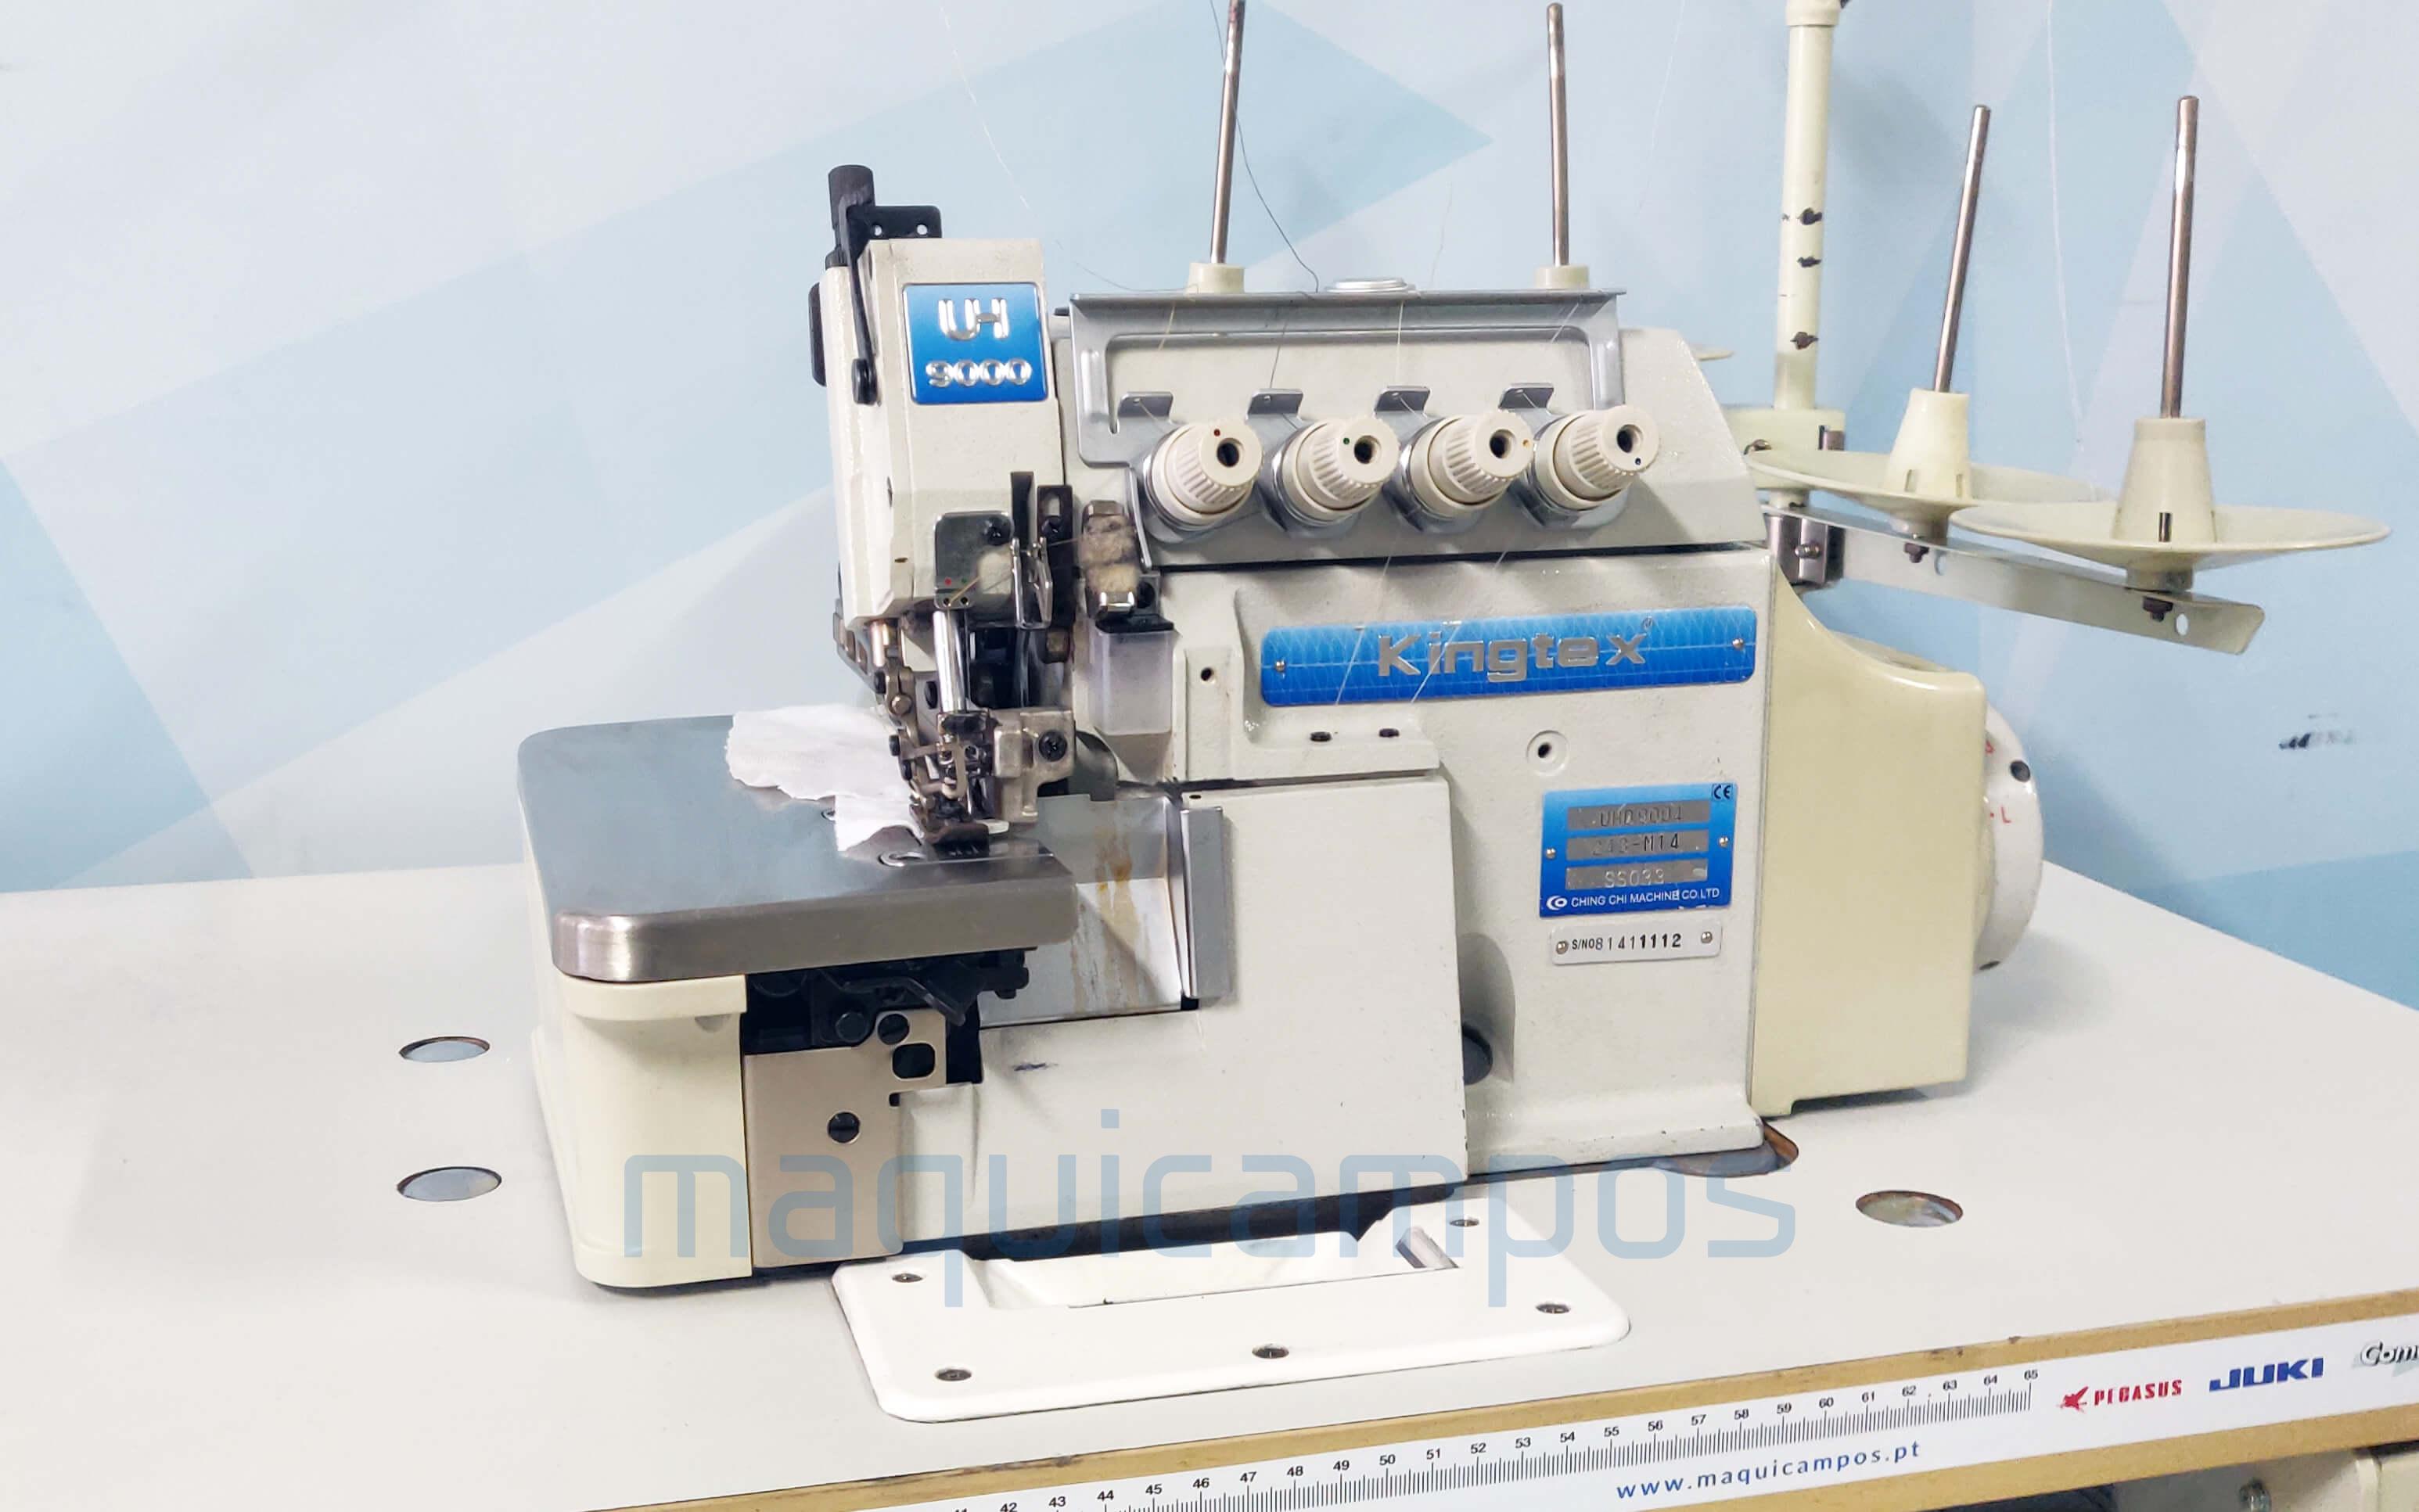 Kingtex UHD-9004 Máquina de Costura Corte e Cose (2 Agulhas)